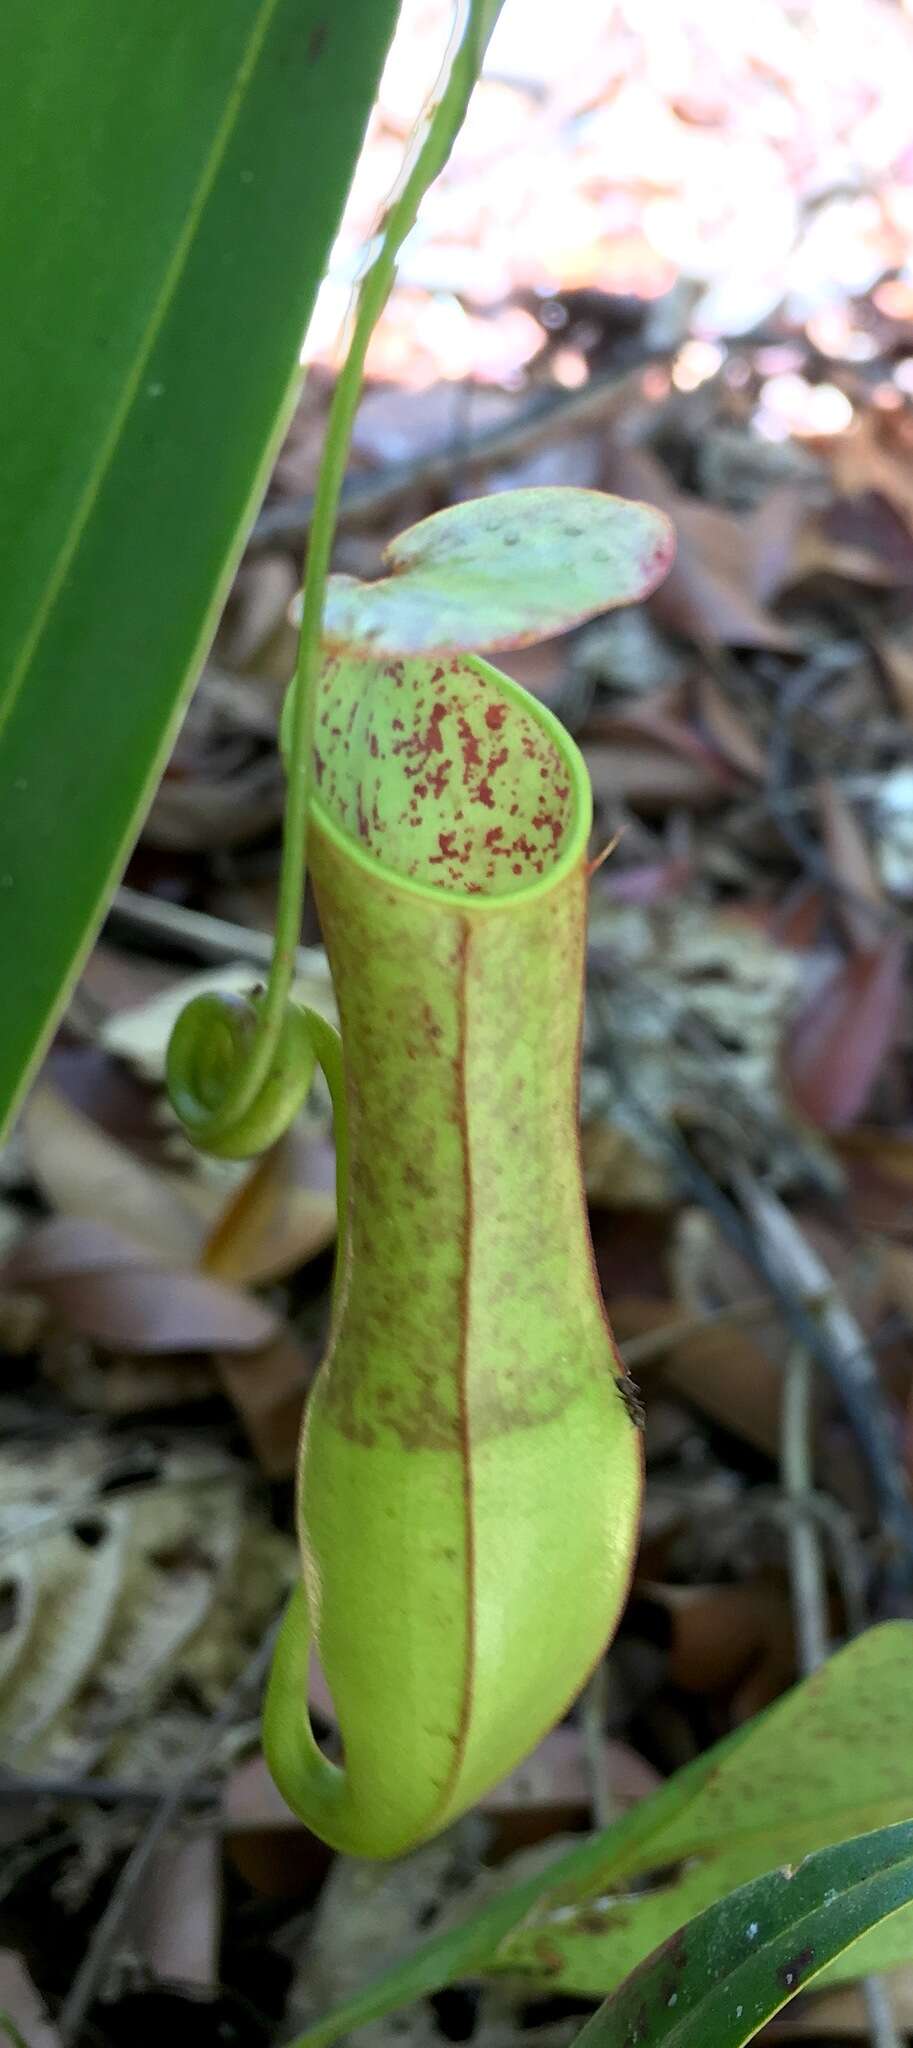 Image of slender pitcher plant